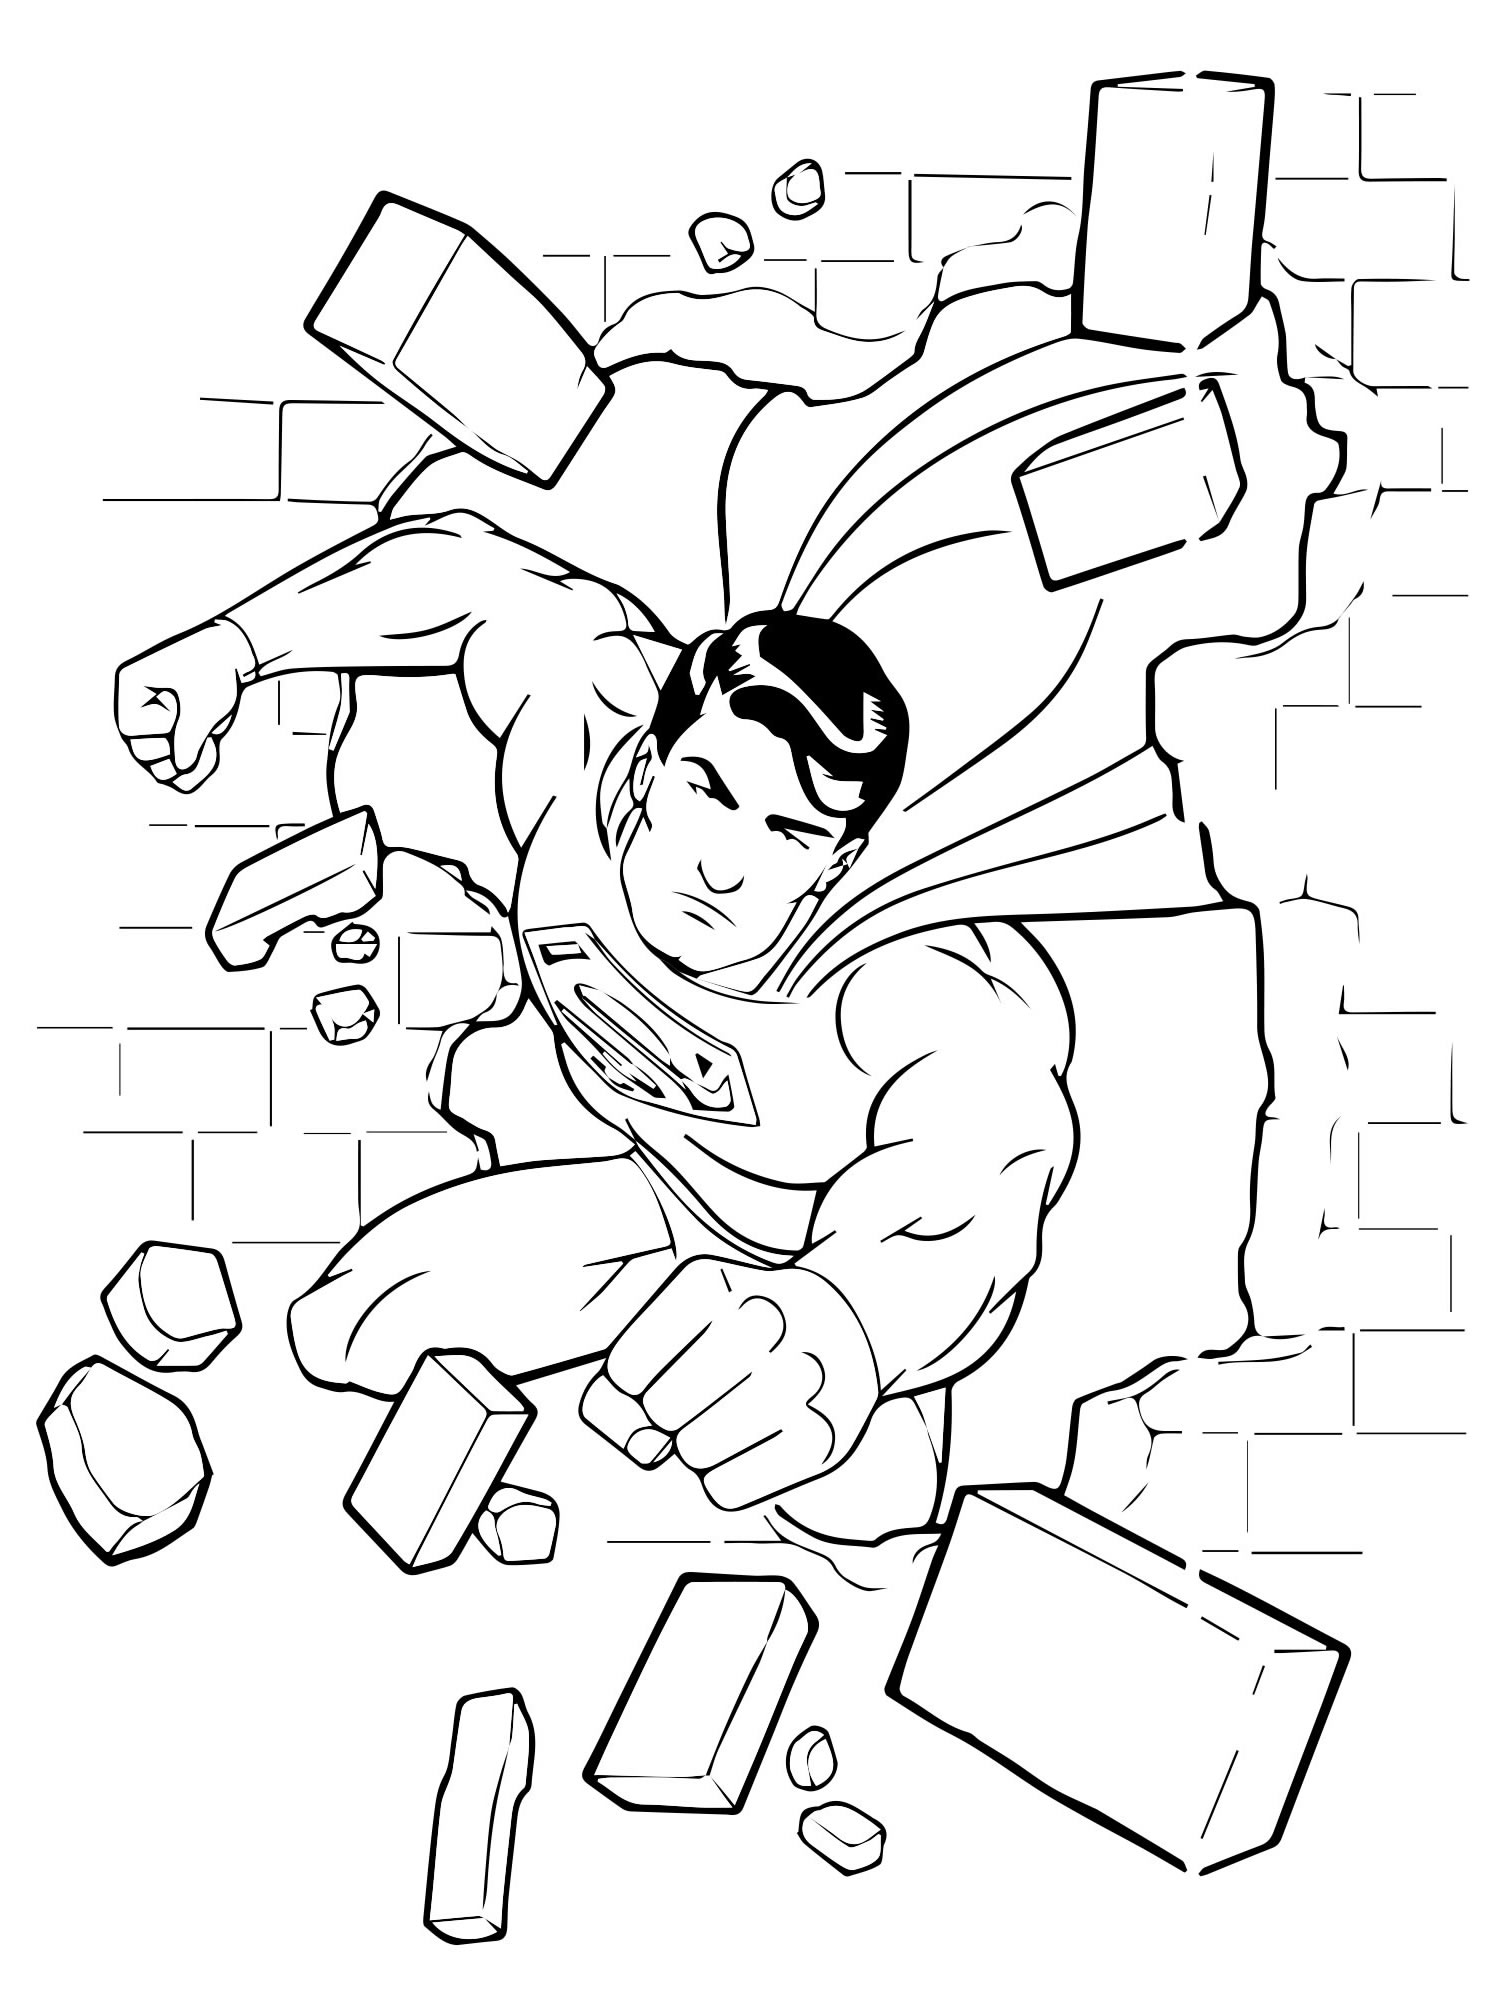 Супергерой Супермен раскраска для детей